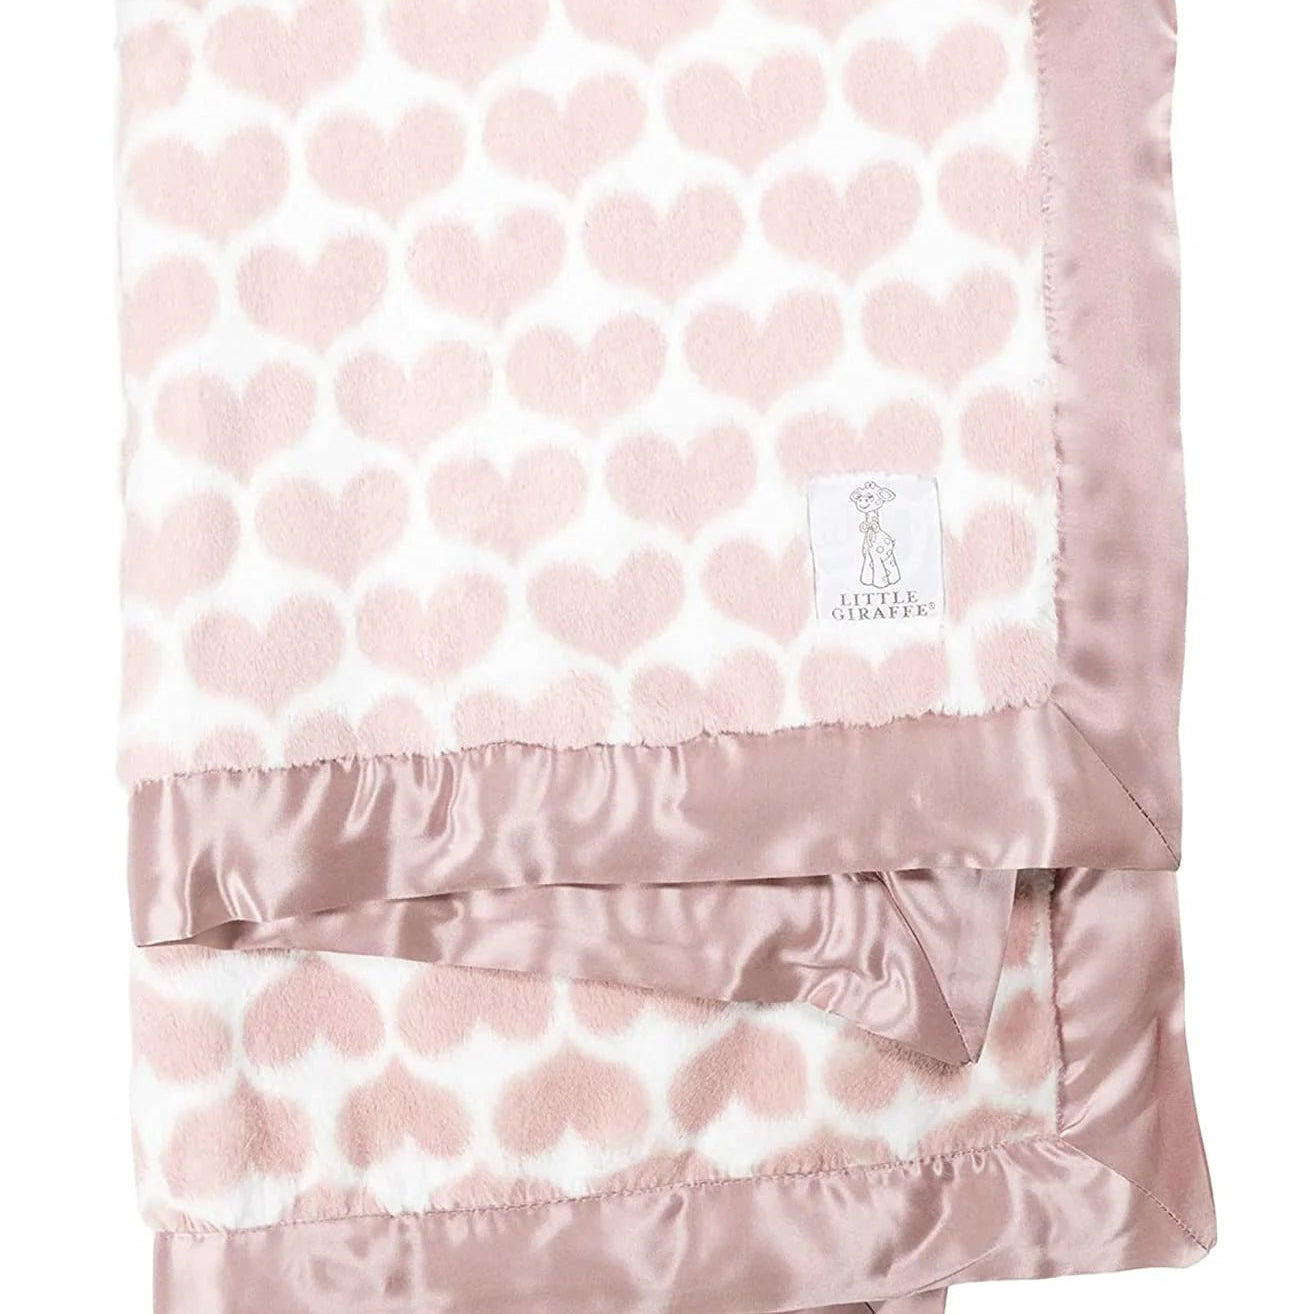 Luxe Heart Army Blanket - Wren Harper